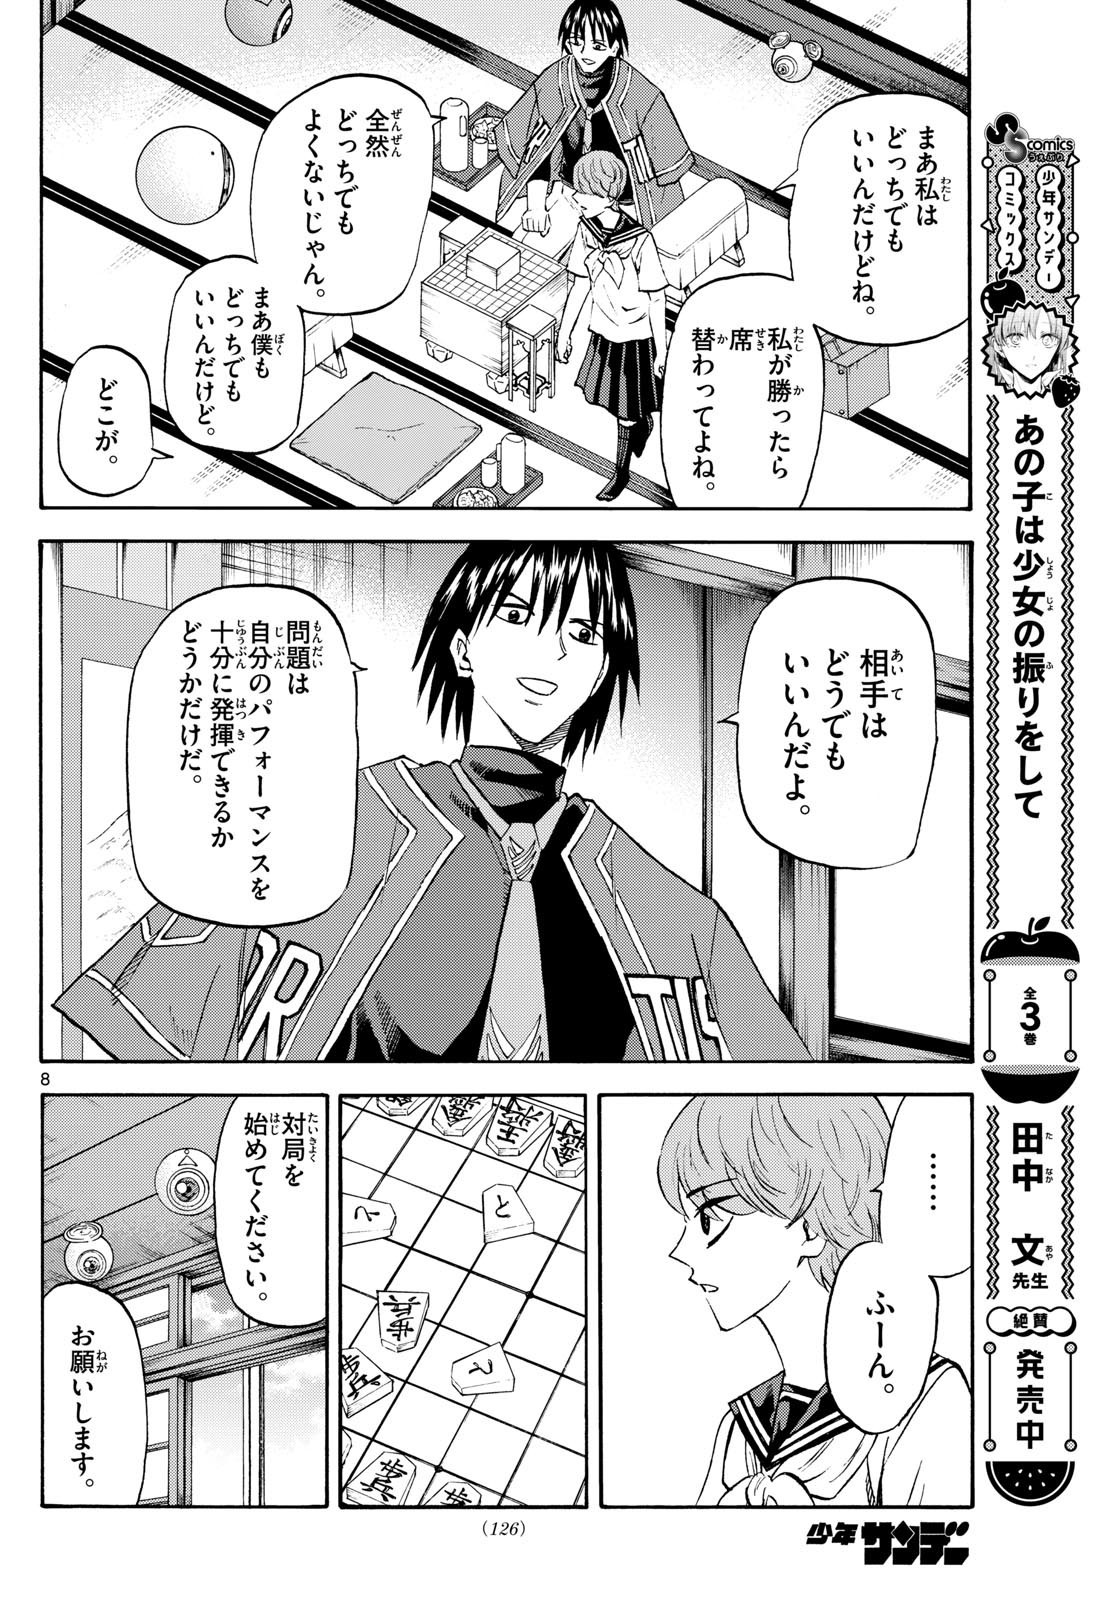 Ryu-to-Ichigo - Chapter 197 - Page 8